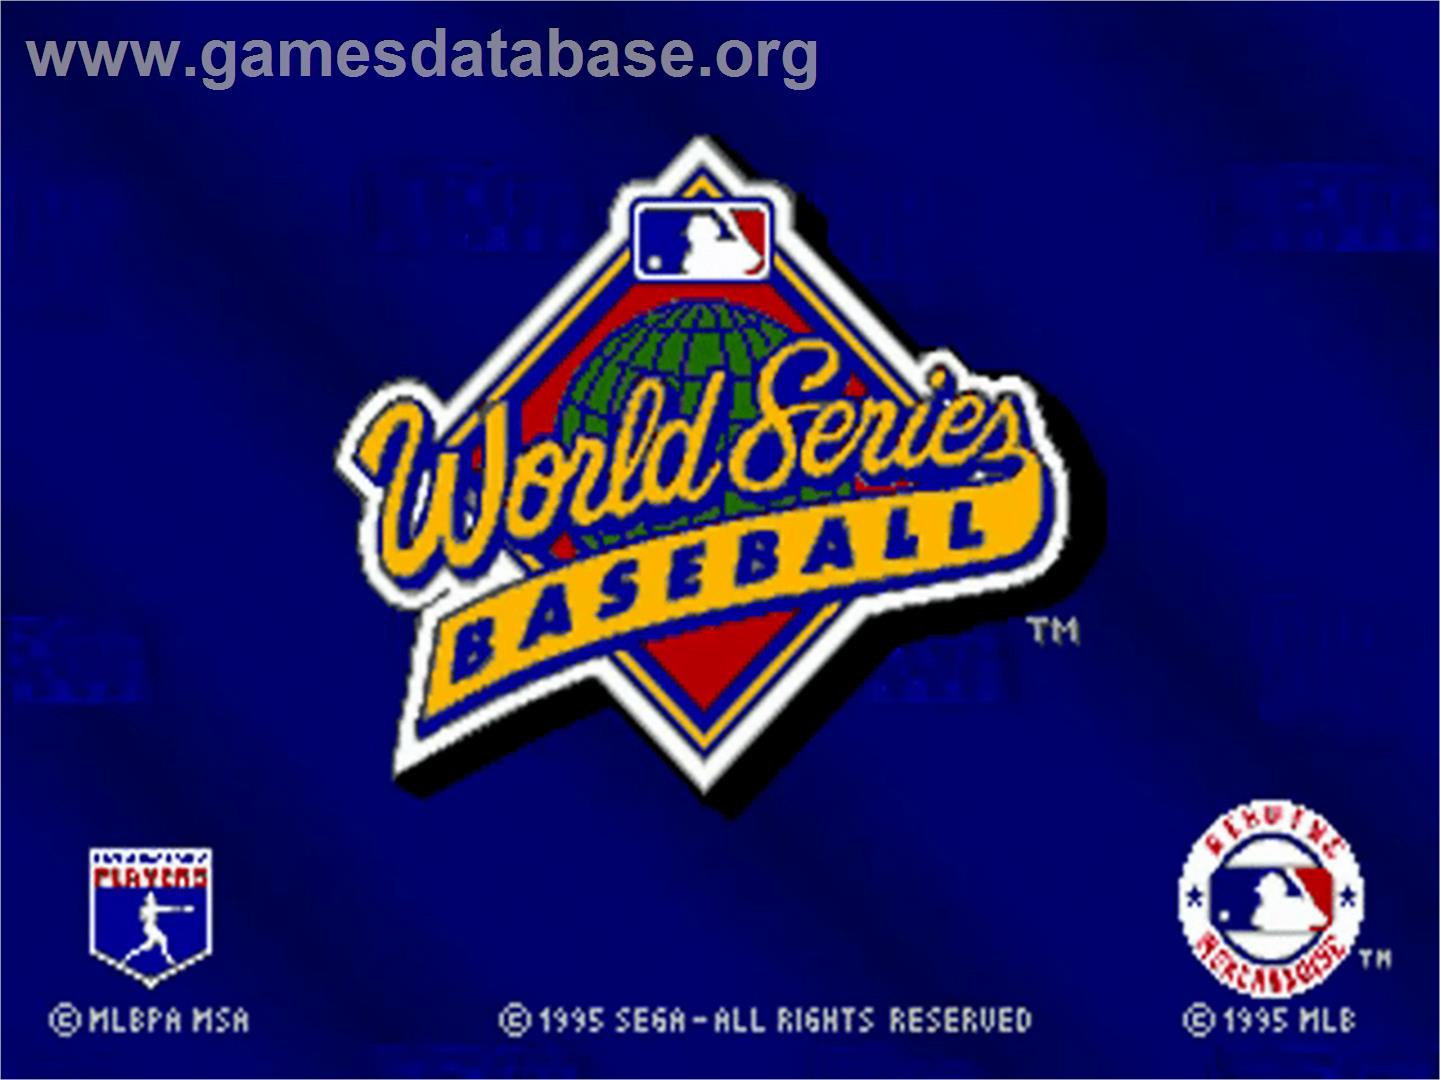 World Series Baseball starring Deion Sanders - Sega 32X - Artwork - Title Screen